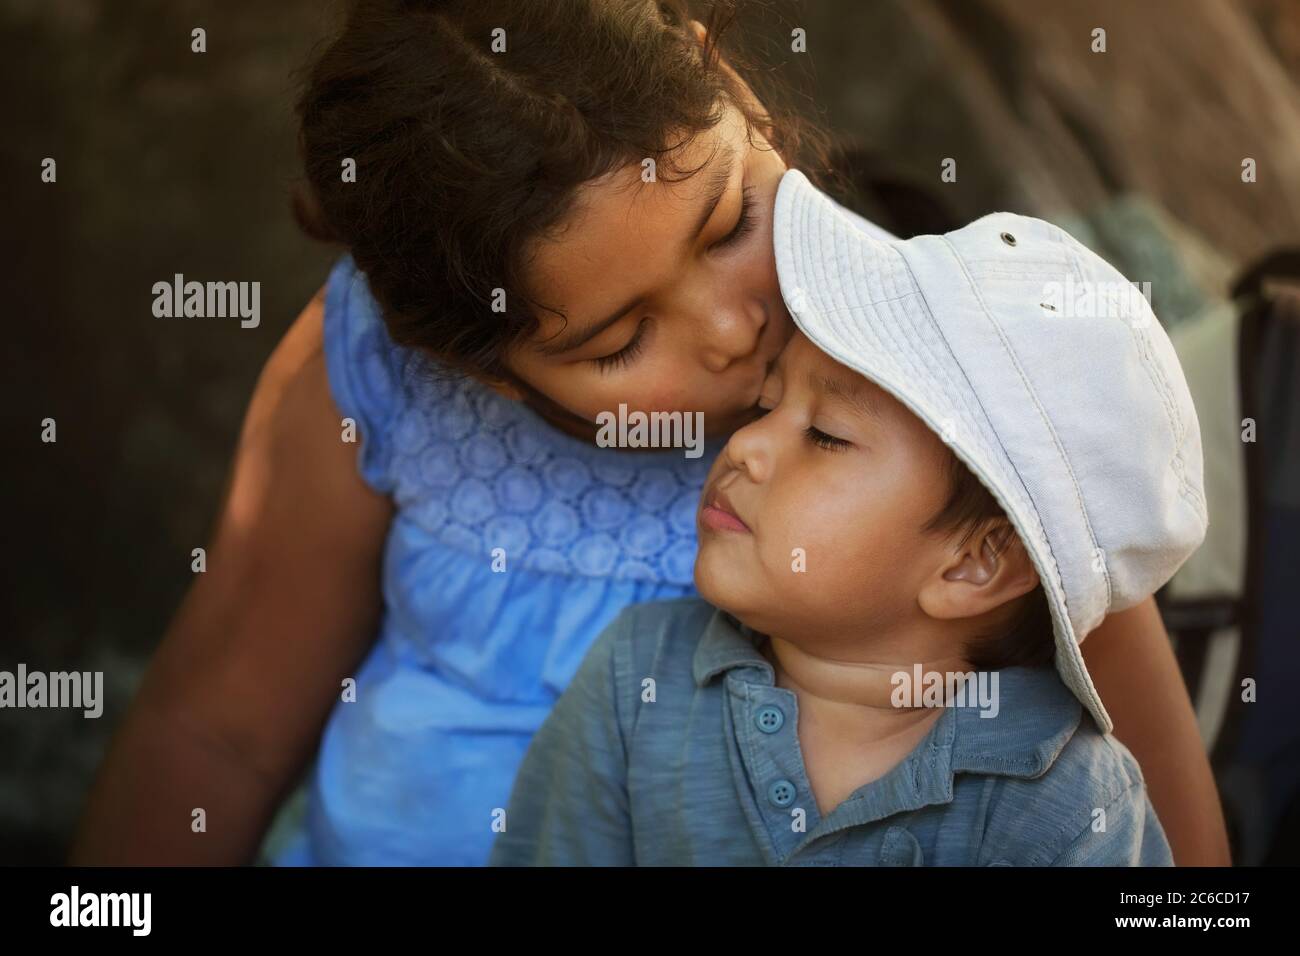 La sorella grande conforta il suo fratello minore dopo avergli fatto male all'aperto, dandogli un bacio nella fronte. Foto Stock